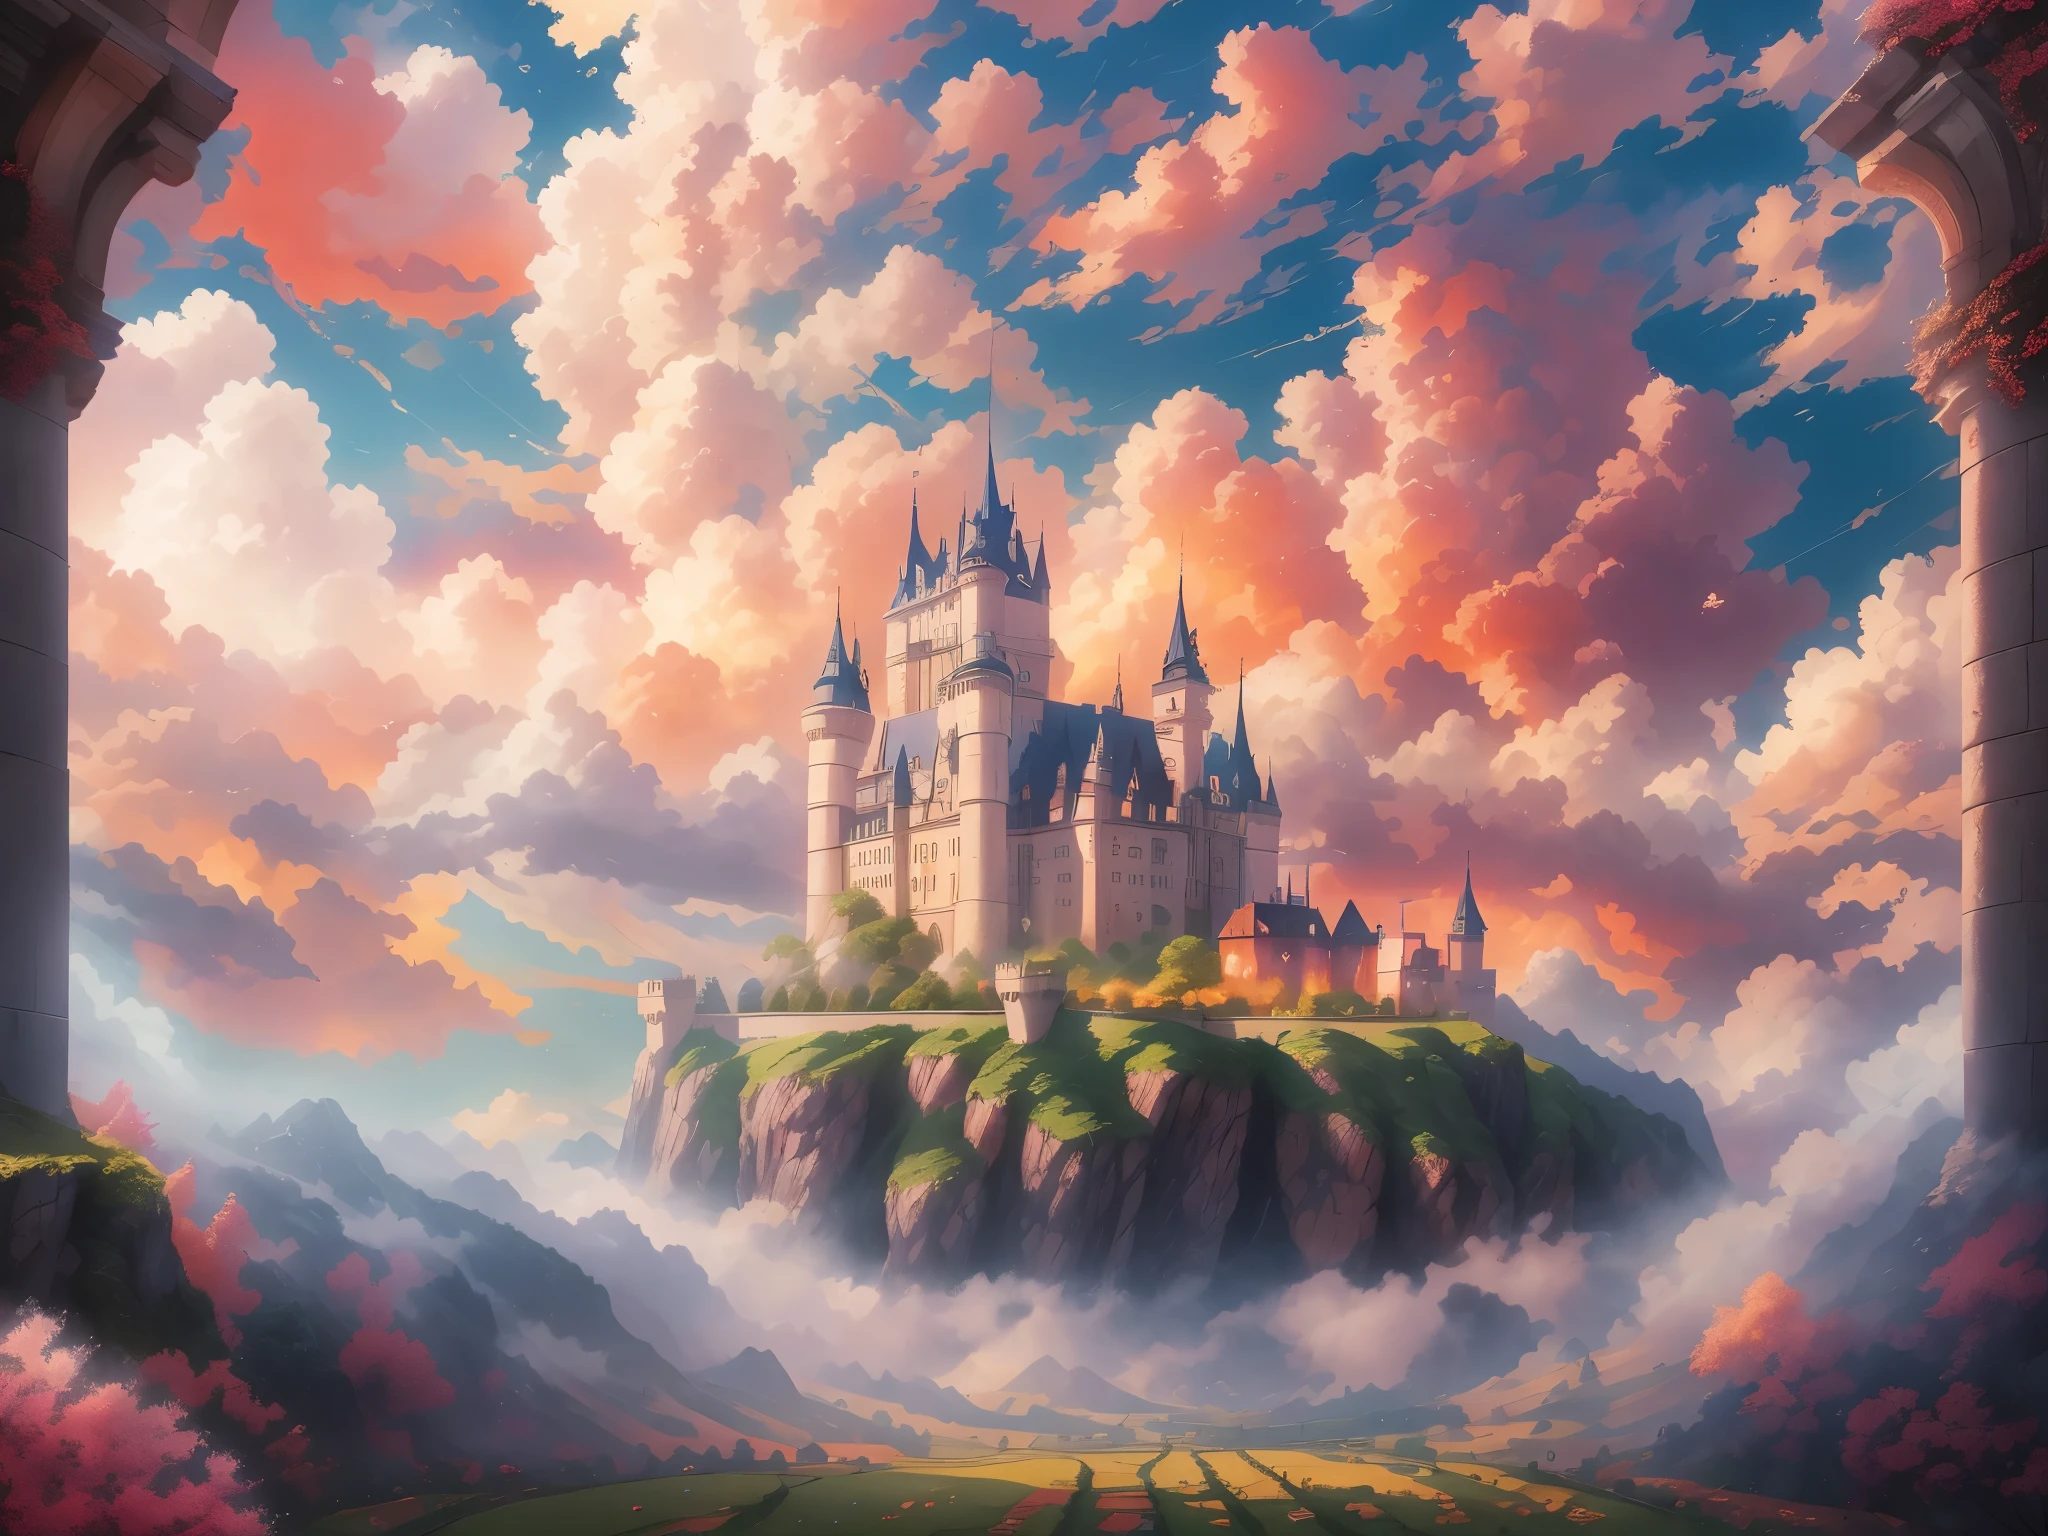 Um castelo cercado por nuvens, arquitetura magnífica, Obra de arte, melhor qualidade, Super detalhes, realista: 1.37, cores vivas, iluminação suave